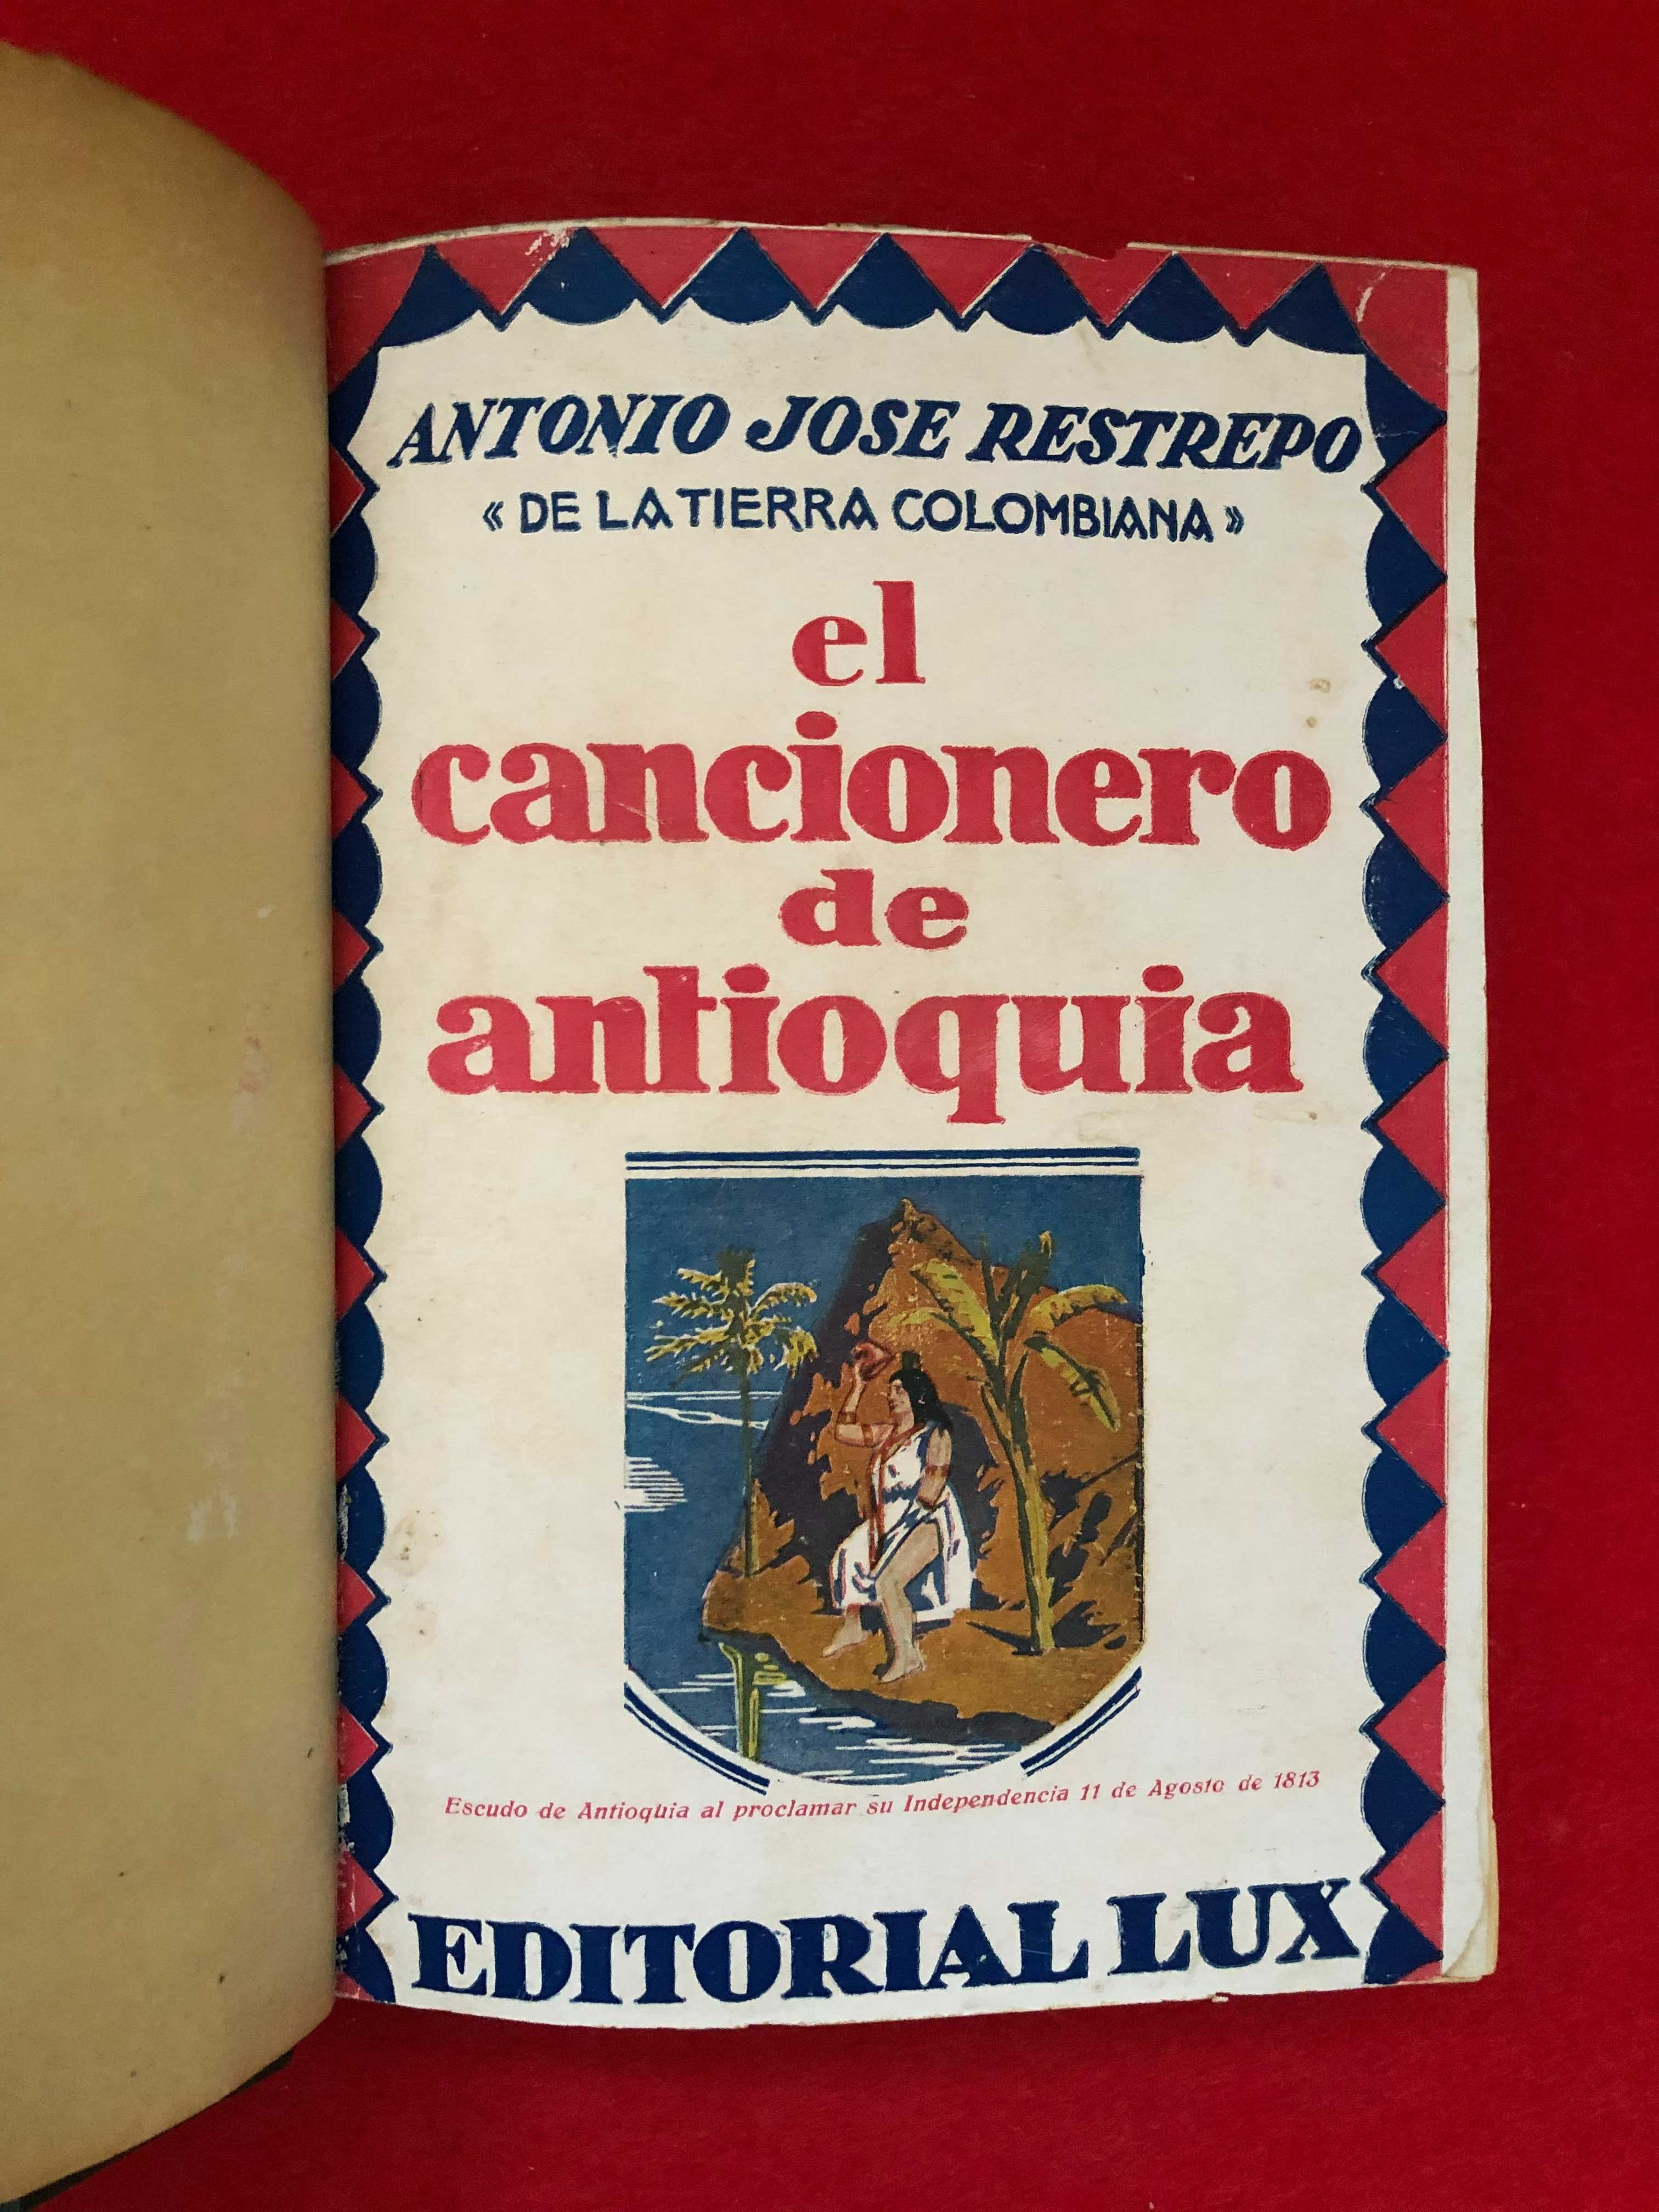 El cancionero de antioquia - António Jose Restrepo